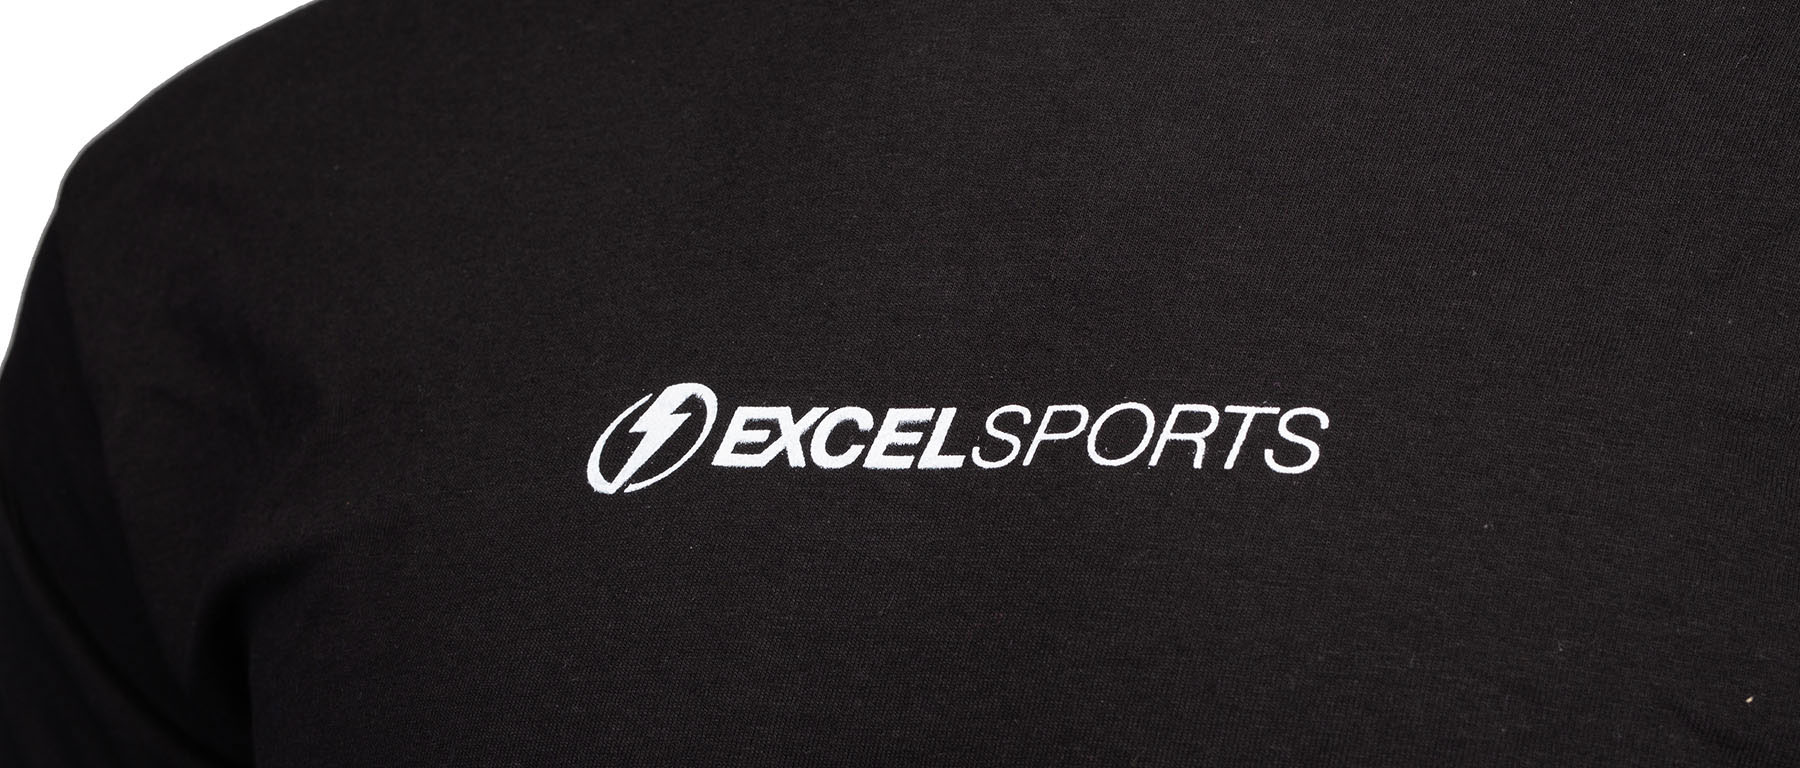 Excel Sports Gilden Logo T-Shirt